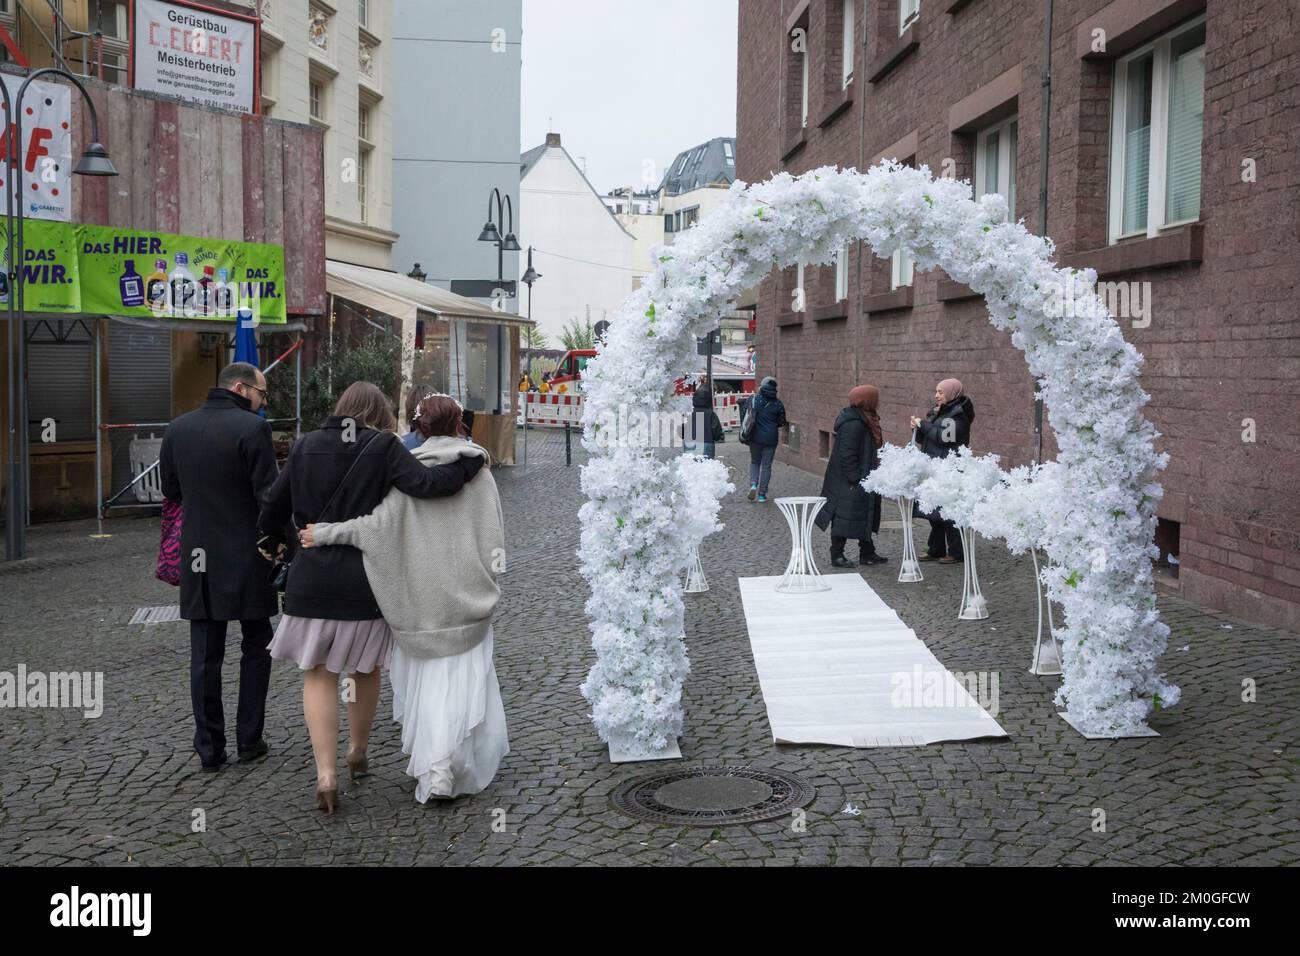 Una sposa viene con le scorte dall'ufficio di registro nella città vecchia e passa un arco di nozze, Colonia, Germania. Eine Braut kommt mit Begleitern vom S Foto Stock